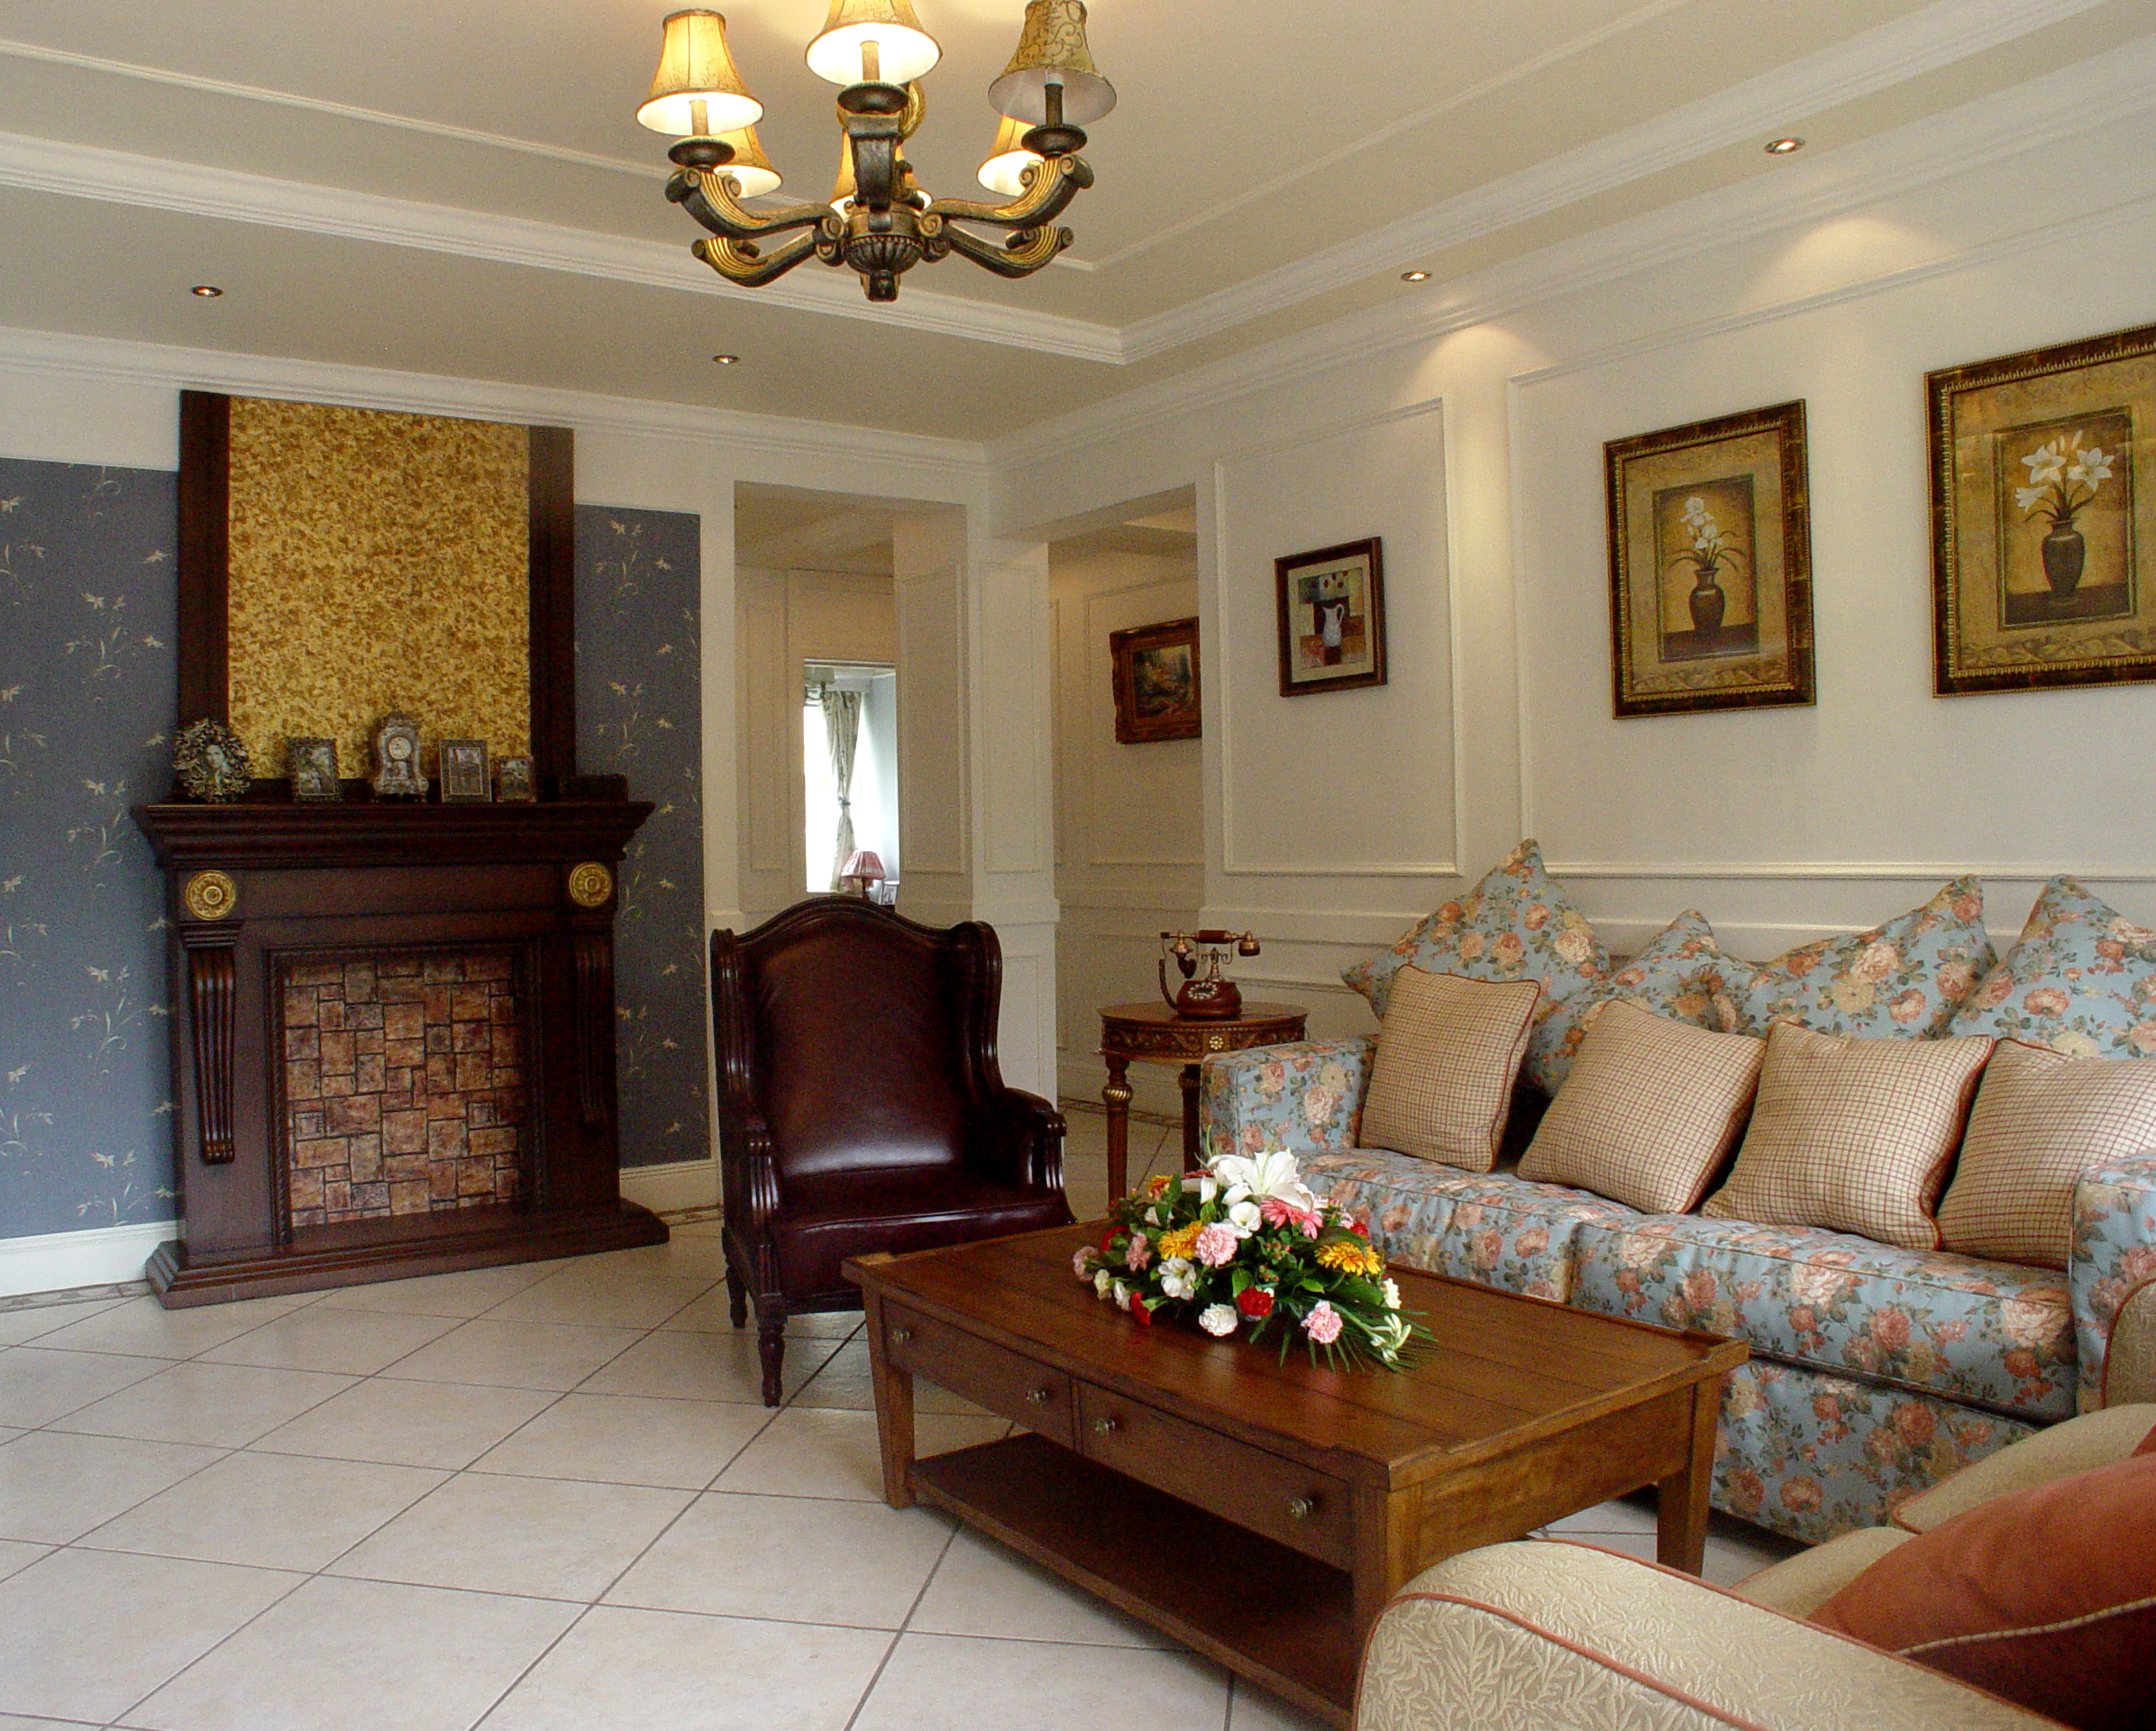 二居 欧式 客厅图片来自室内设计装饰在中铁塔米亚欧式风格的分享